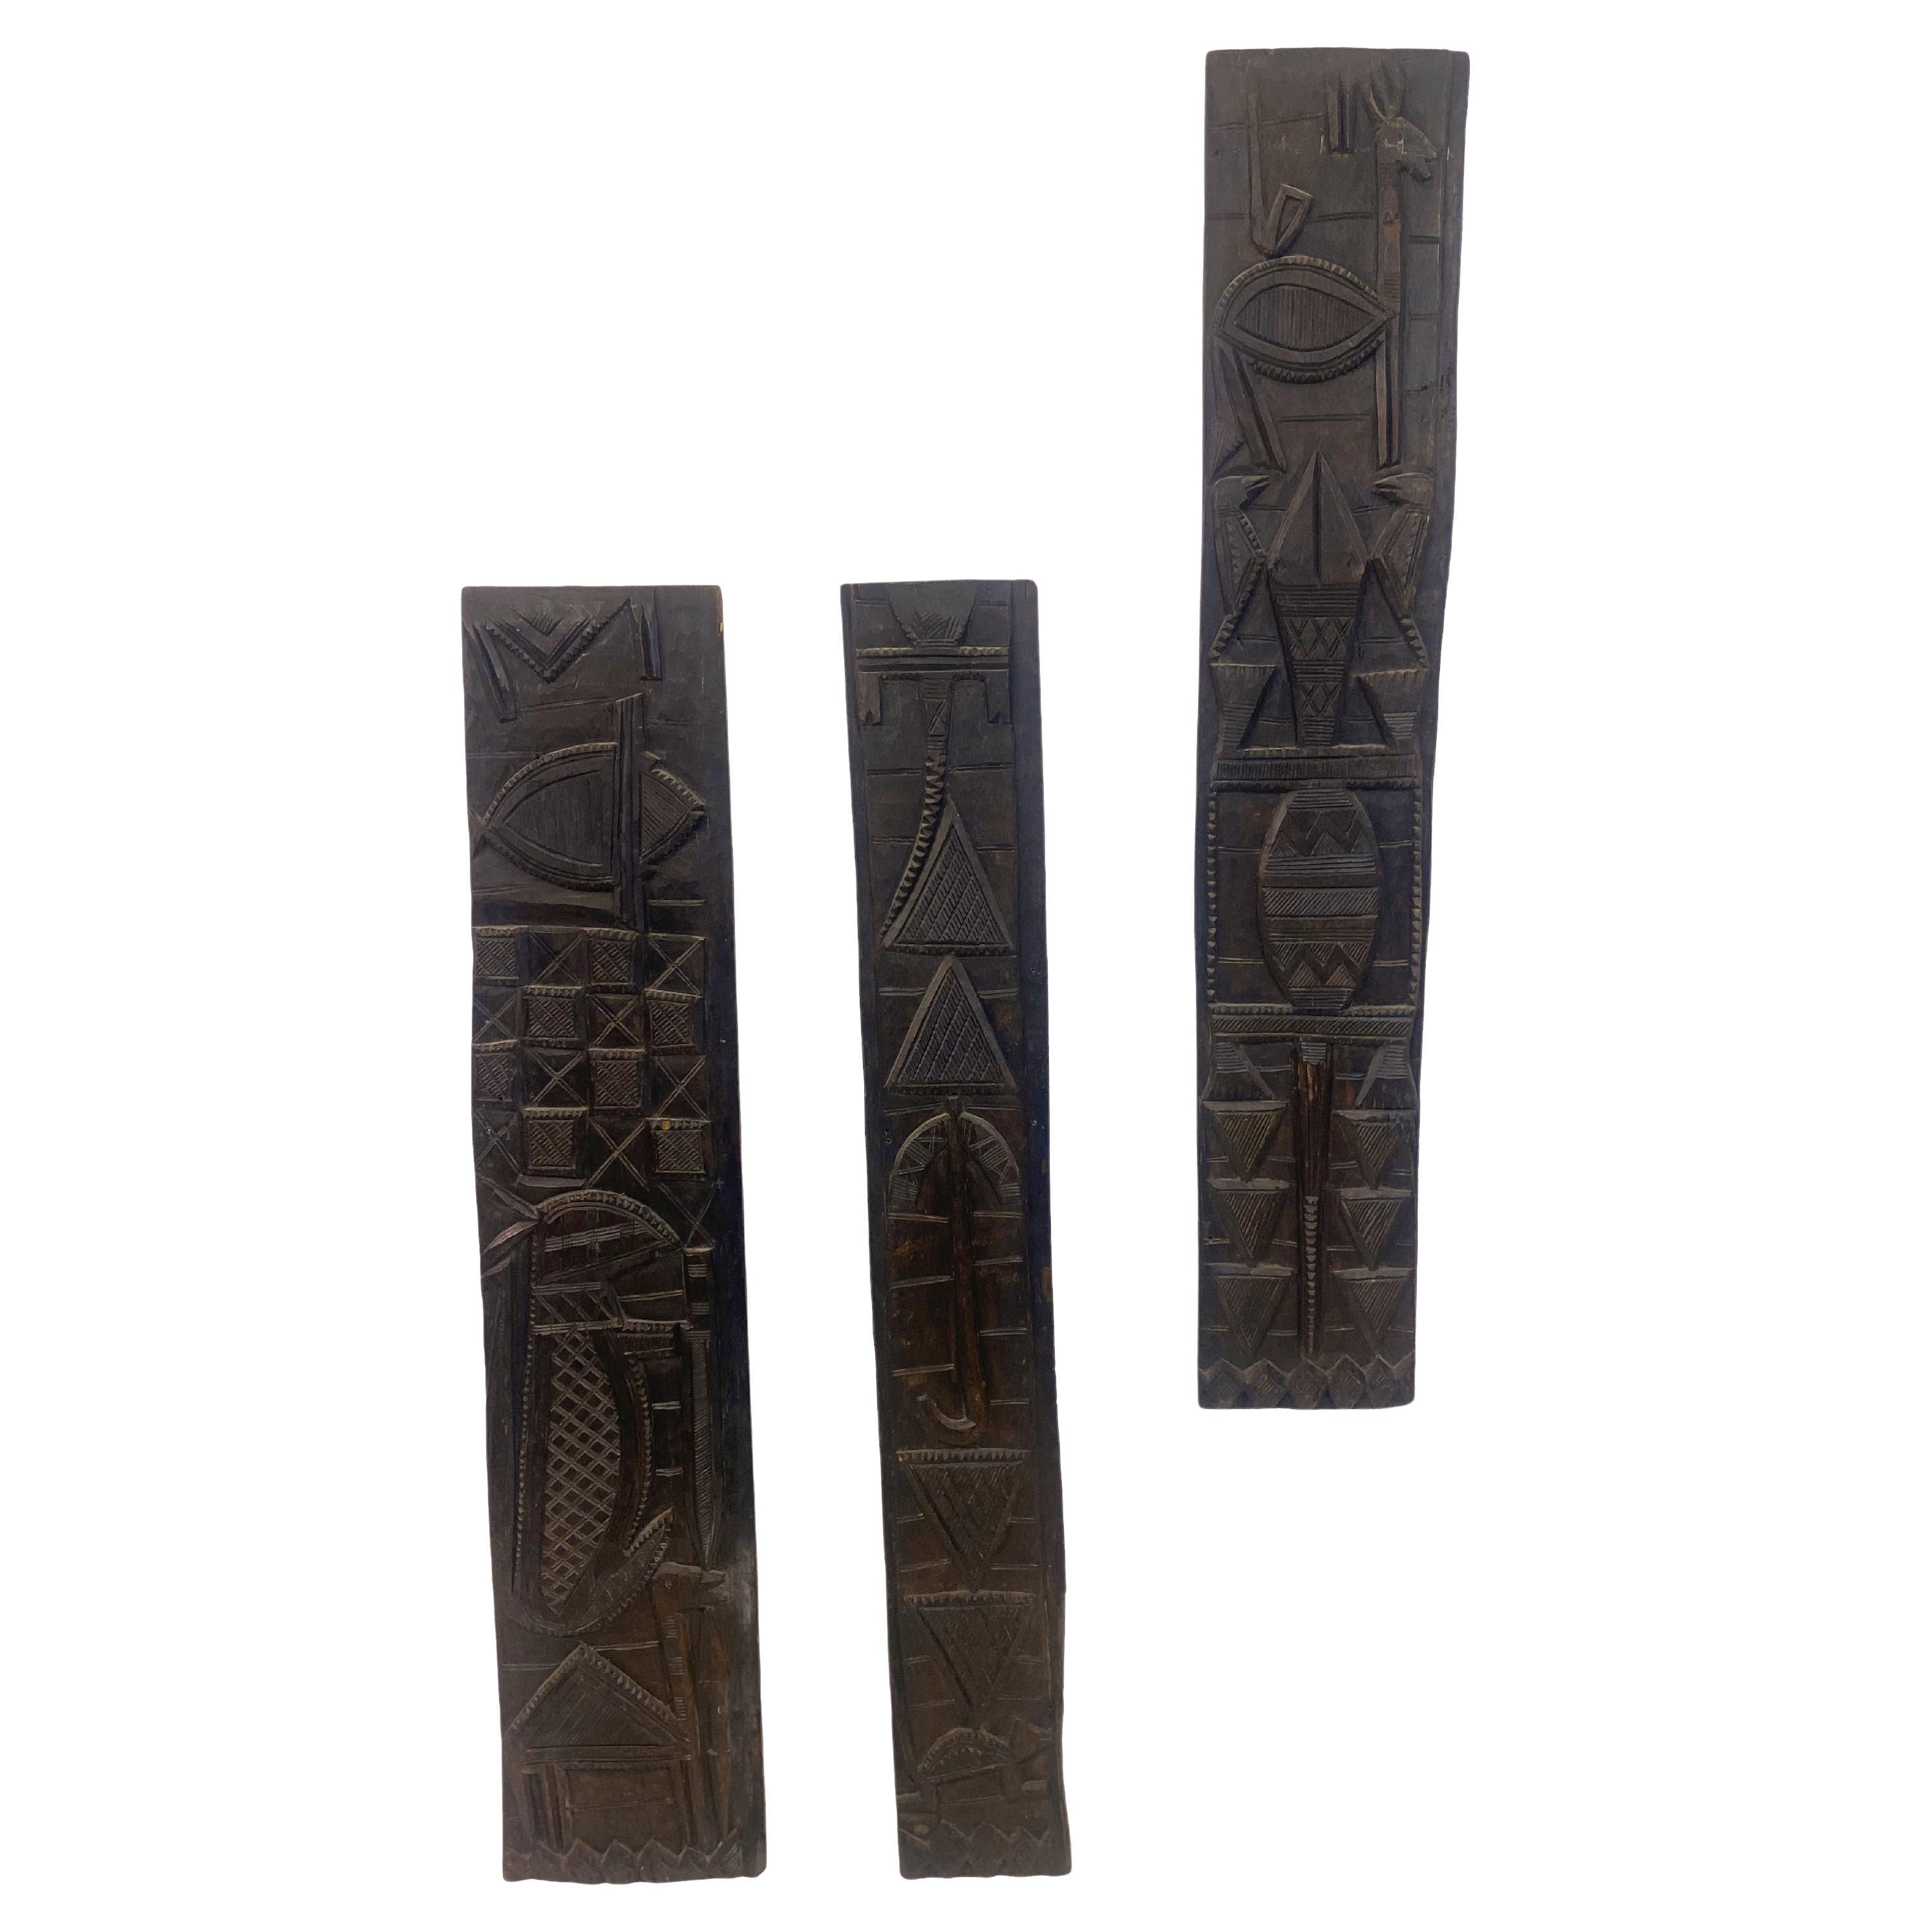 Geschnitztes afrikanisches Holz Türverkleidung Wandtafeln